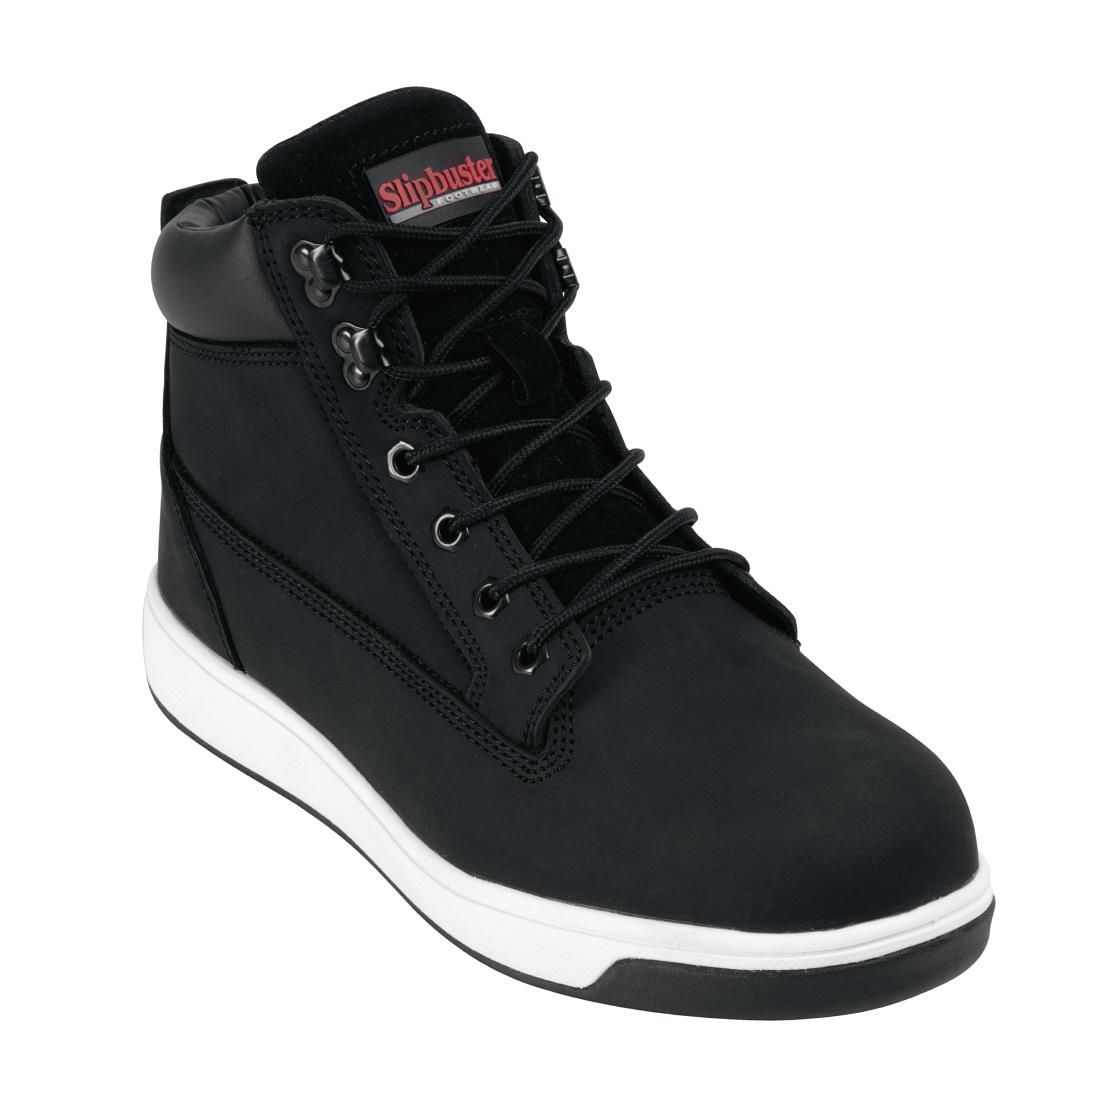 Slipbuster Sneaker Boots Black 44